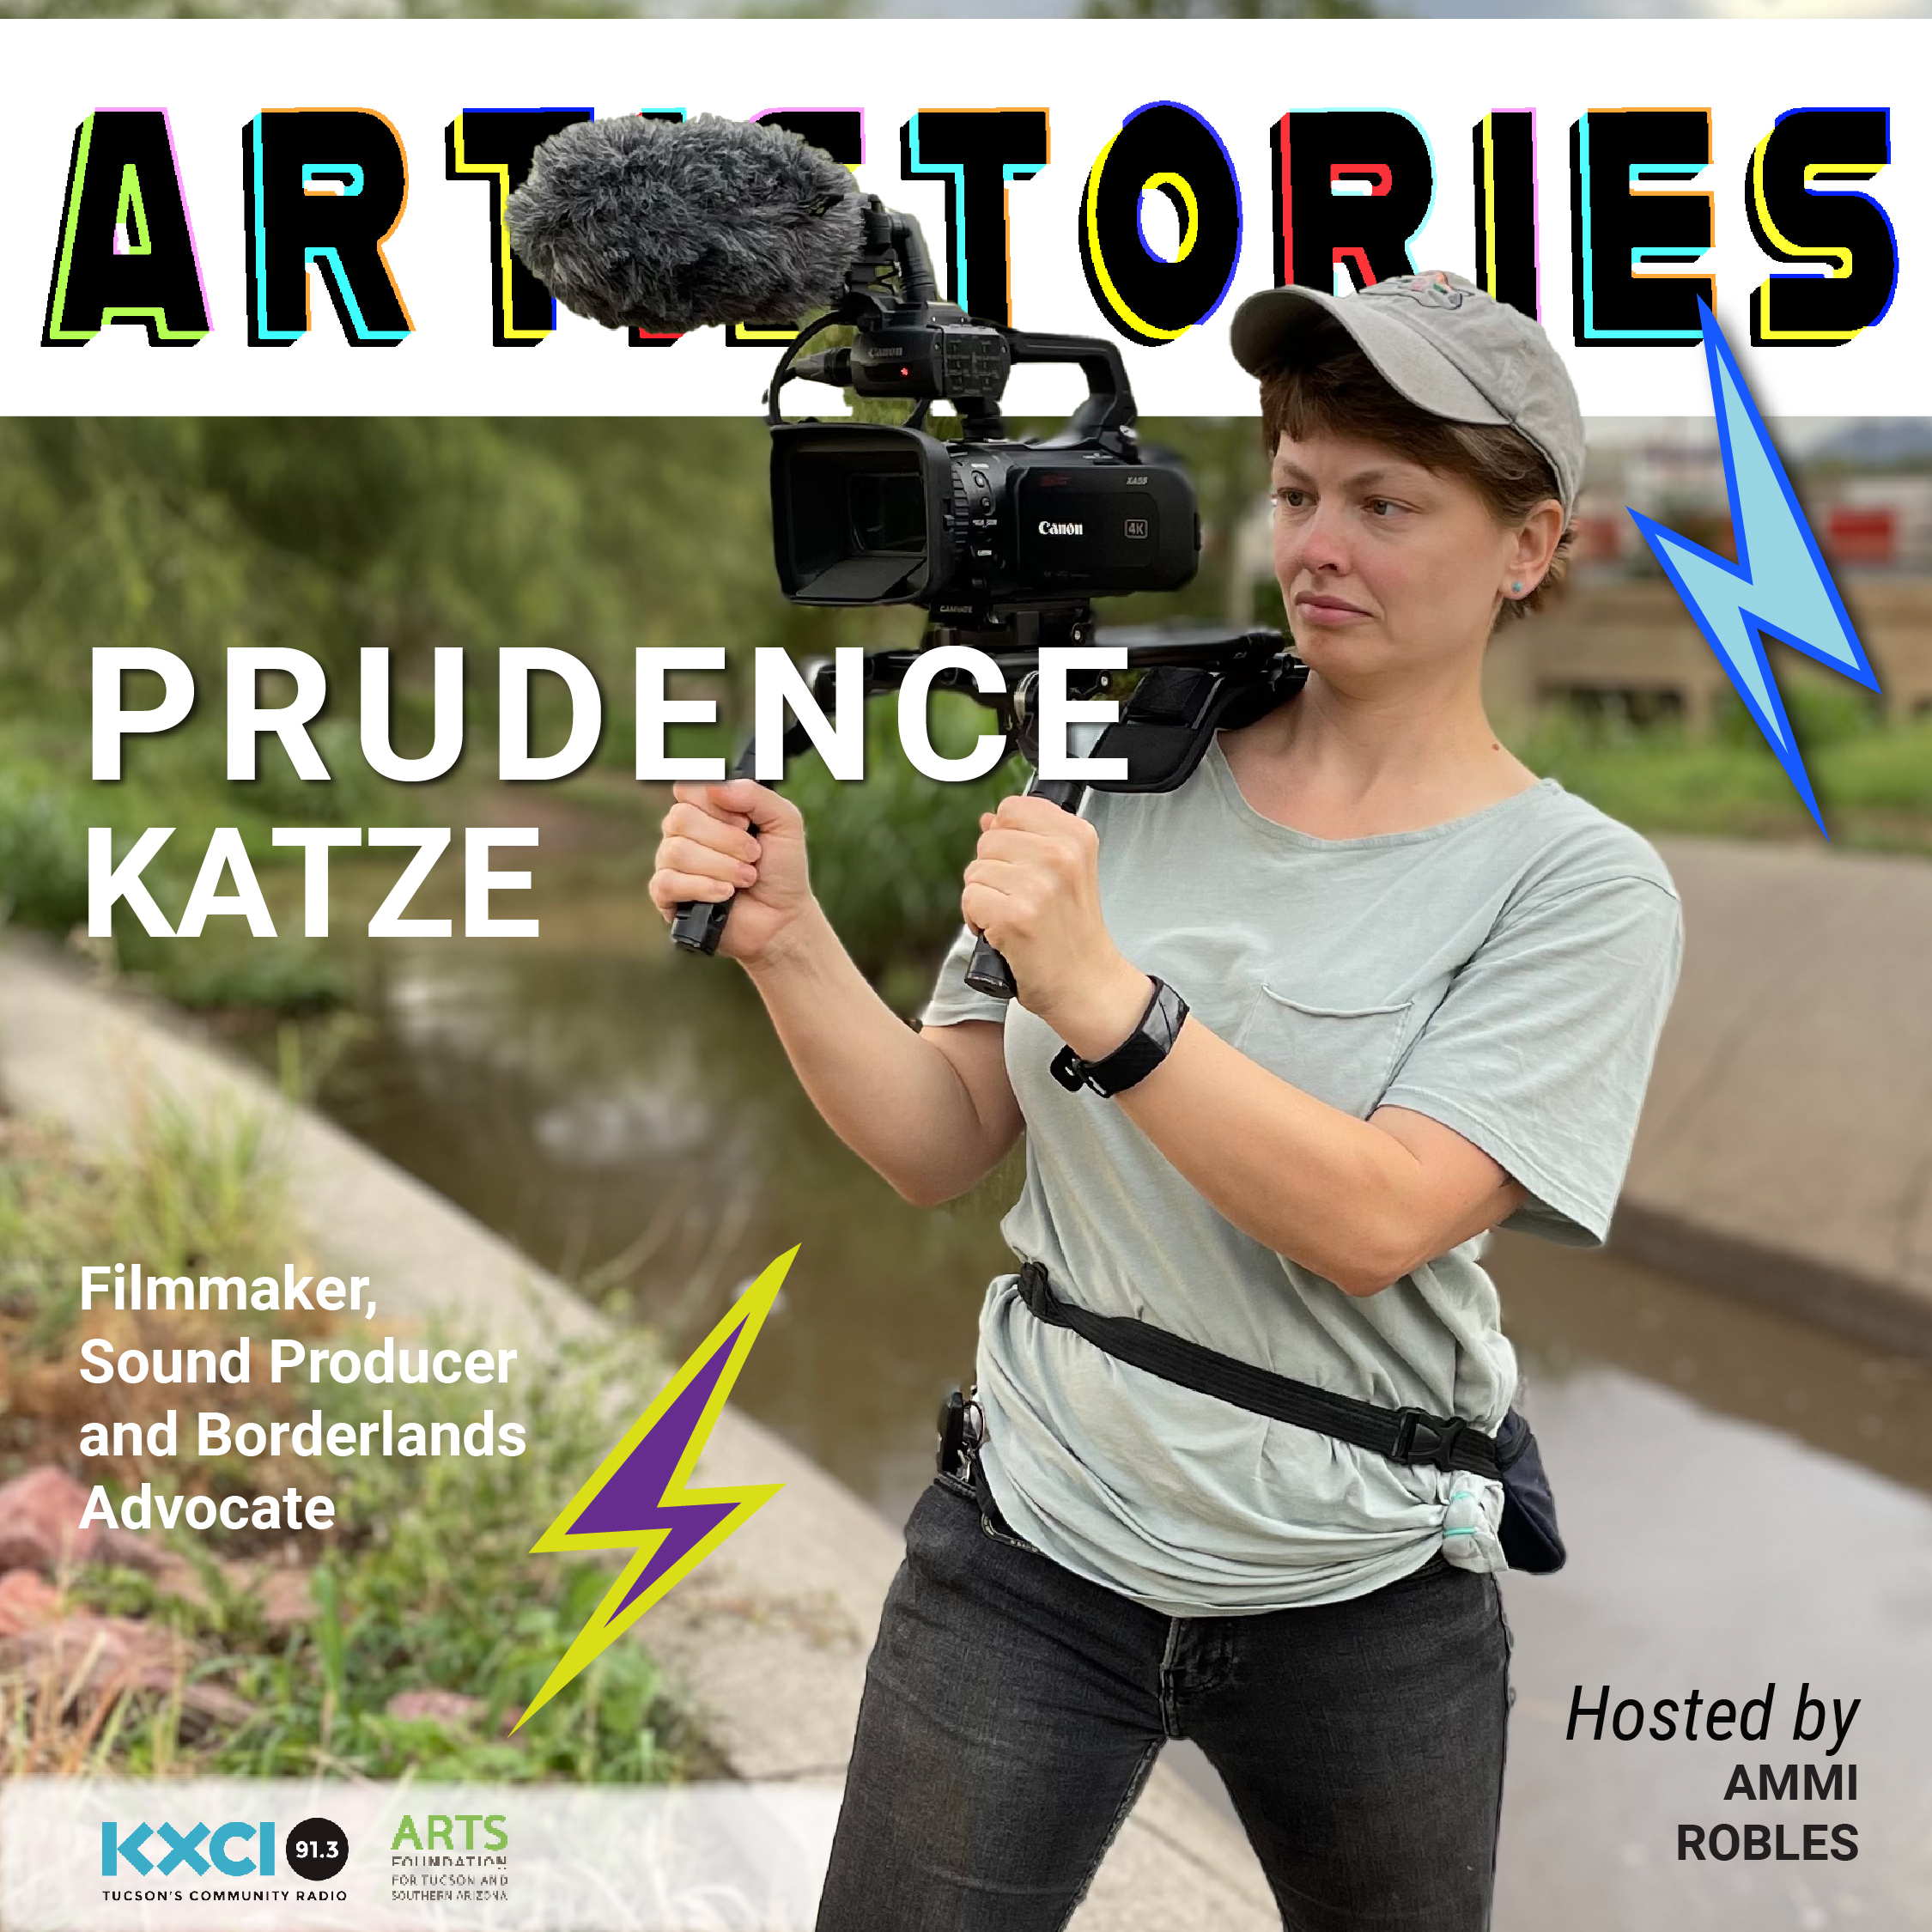 Prudence Katze: Filmmaker, Sound Producer, and Borderlands Advocate